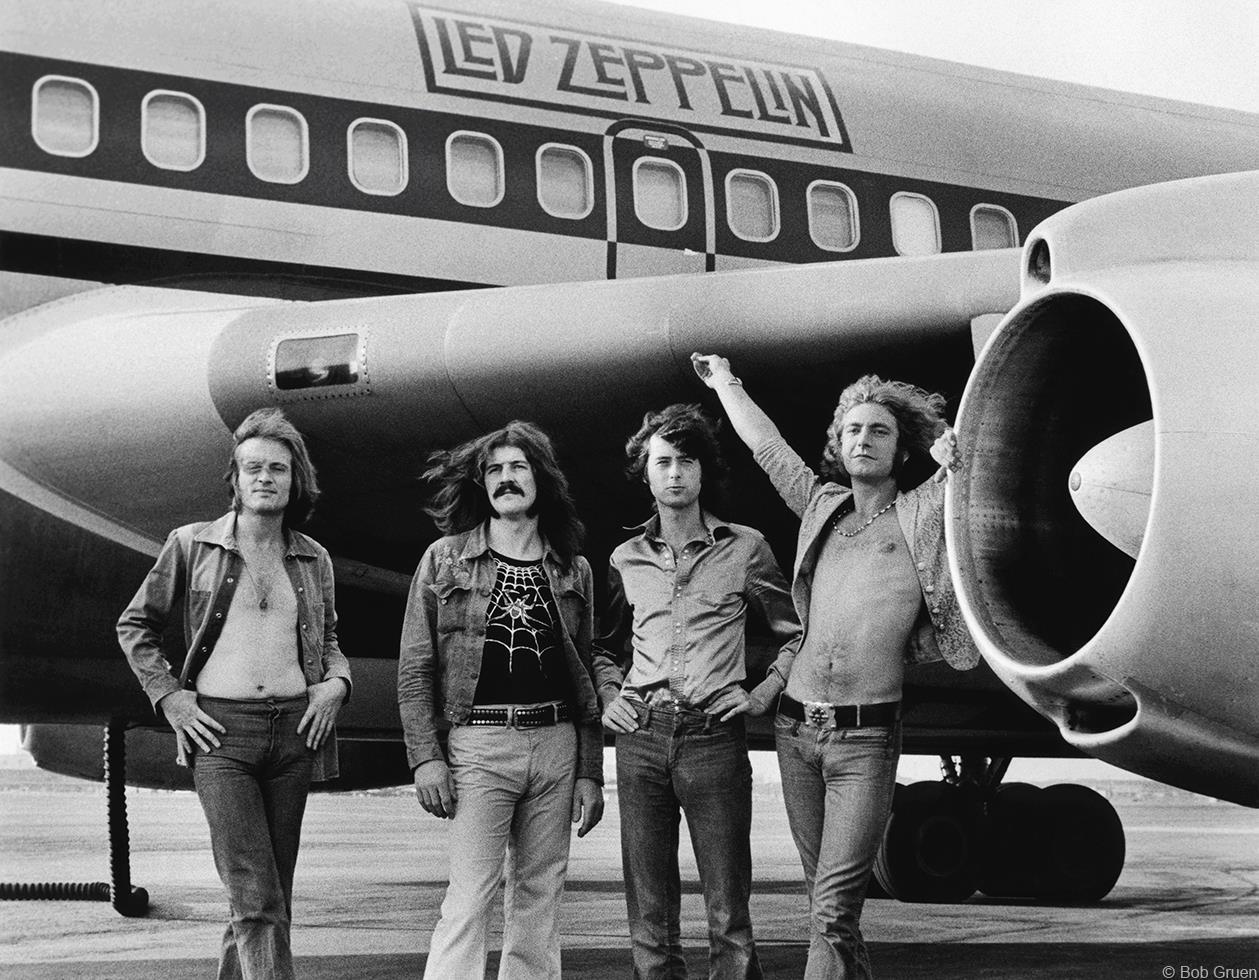 Led Zeppelin "Plane"